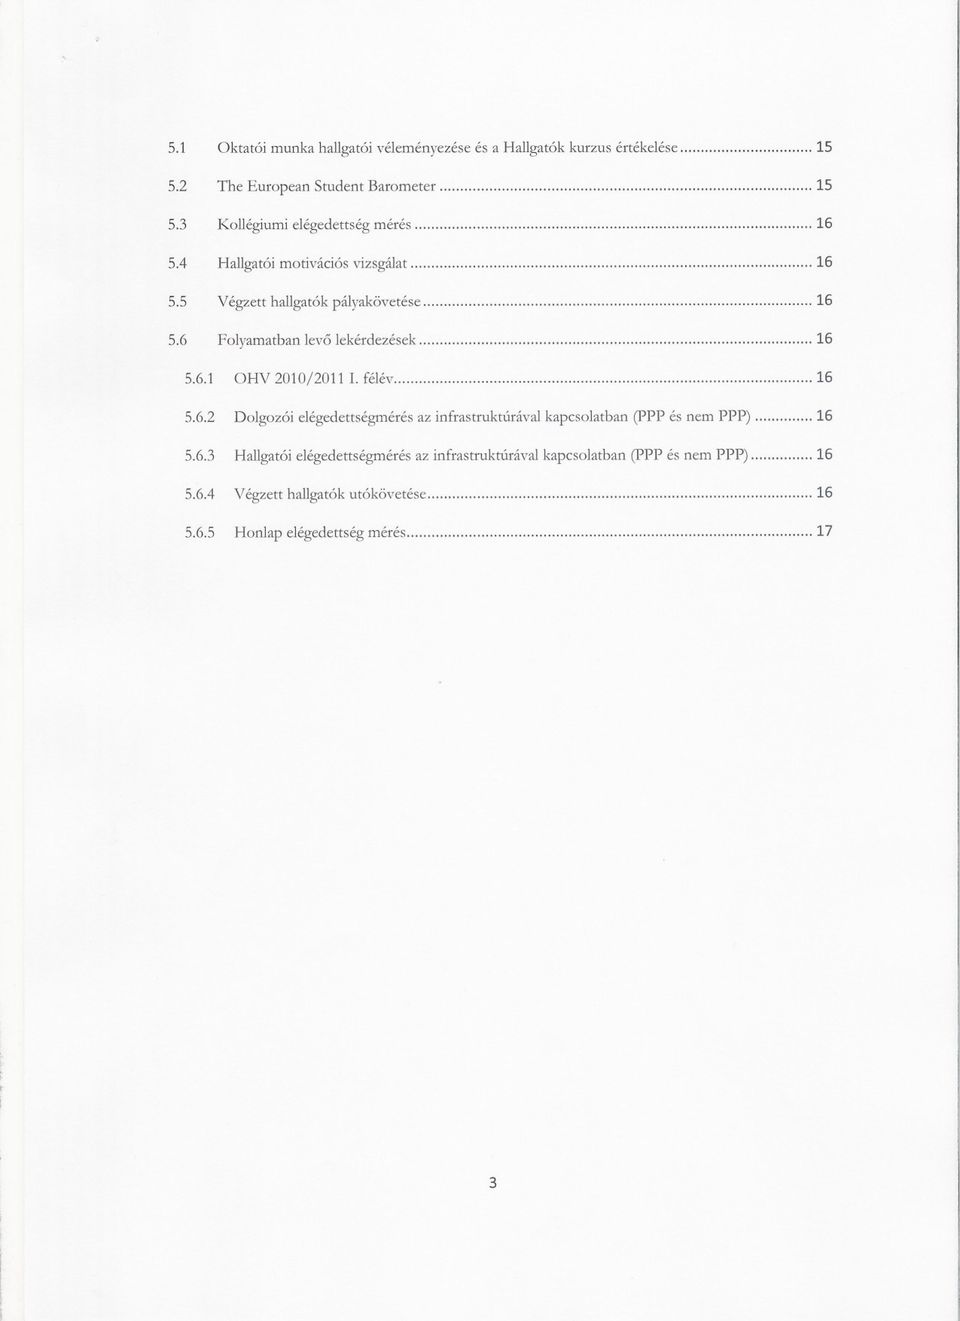 6 Folyamatban levo lekérdezések 16 5.6.1 OHV 2010/2011 1. félév 16 5.6.2 Dolgozói elégedettségmérés az infrastruktúrával kapcsolatban (ppp és nem PPP) 16 5.